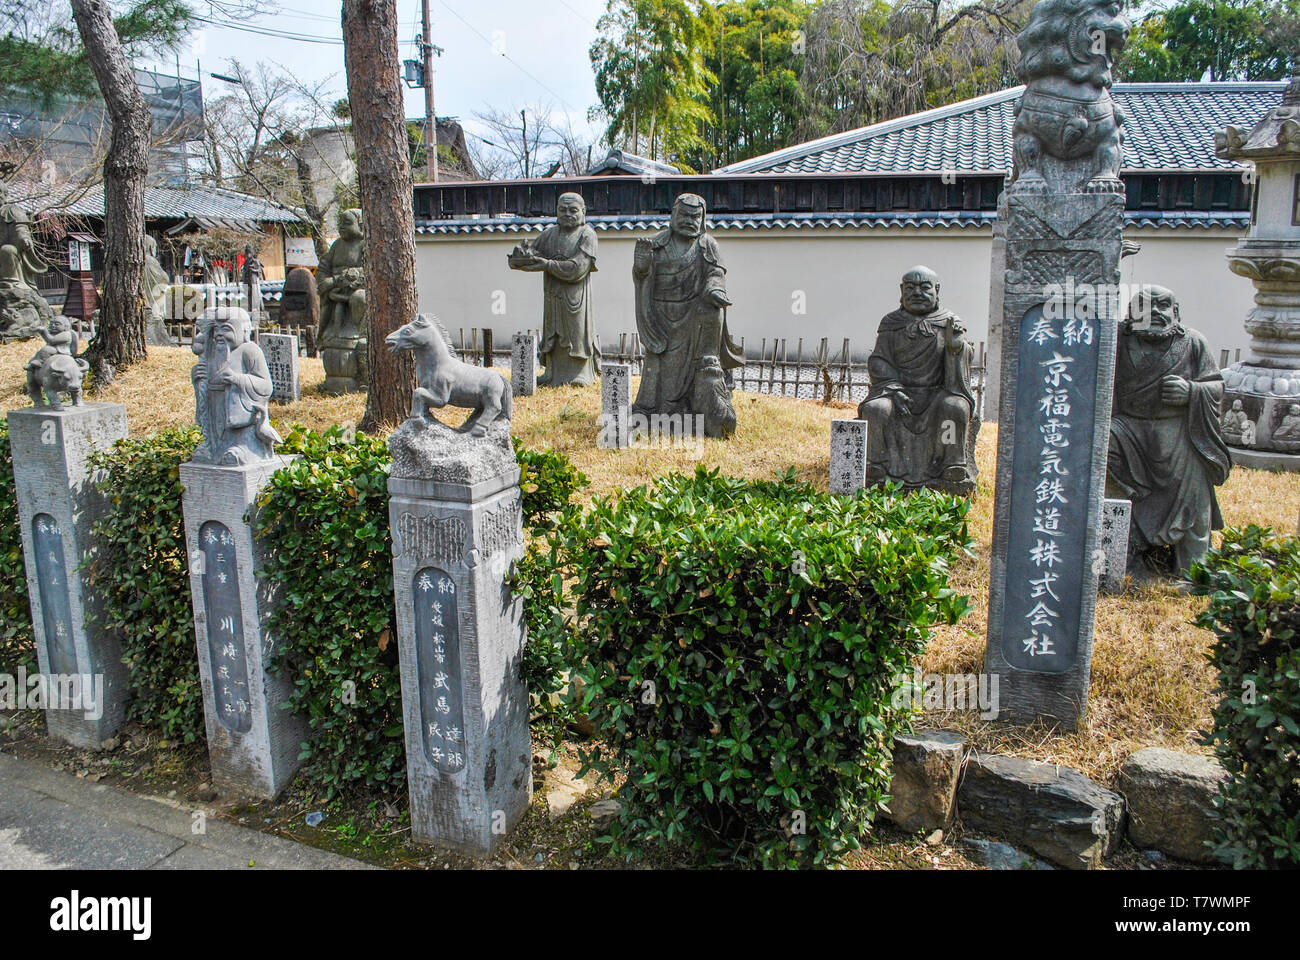 Diese Anordnung von Statuen sind bekannt als die Arashiyama Rakans, ein RAKAN ist ein vollständig erleuchteten Buddhistischen Salbei. Hogon-in Tempel, ein subtemple der Rin Stockfoto